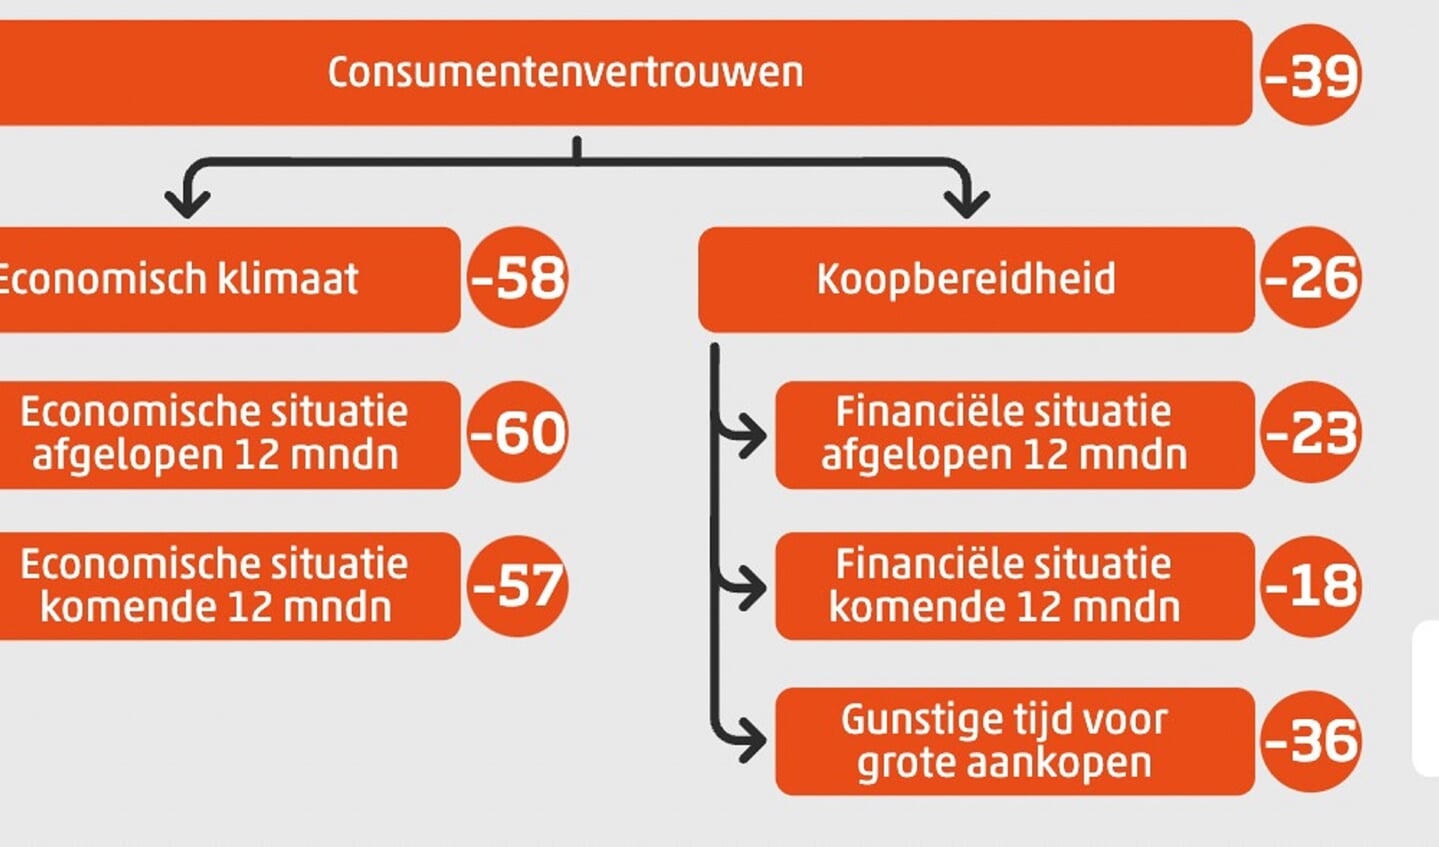 Samenstelling consumentenvertrouwen, maart 2022.